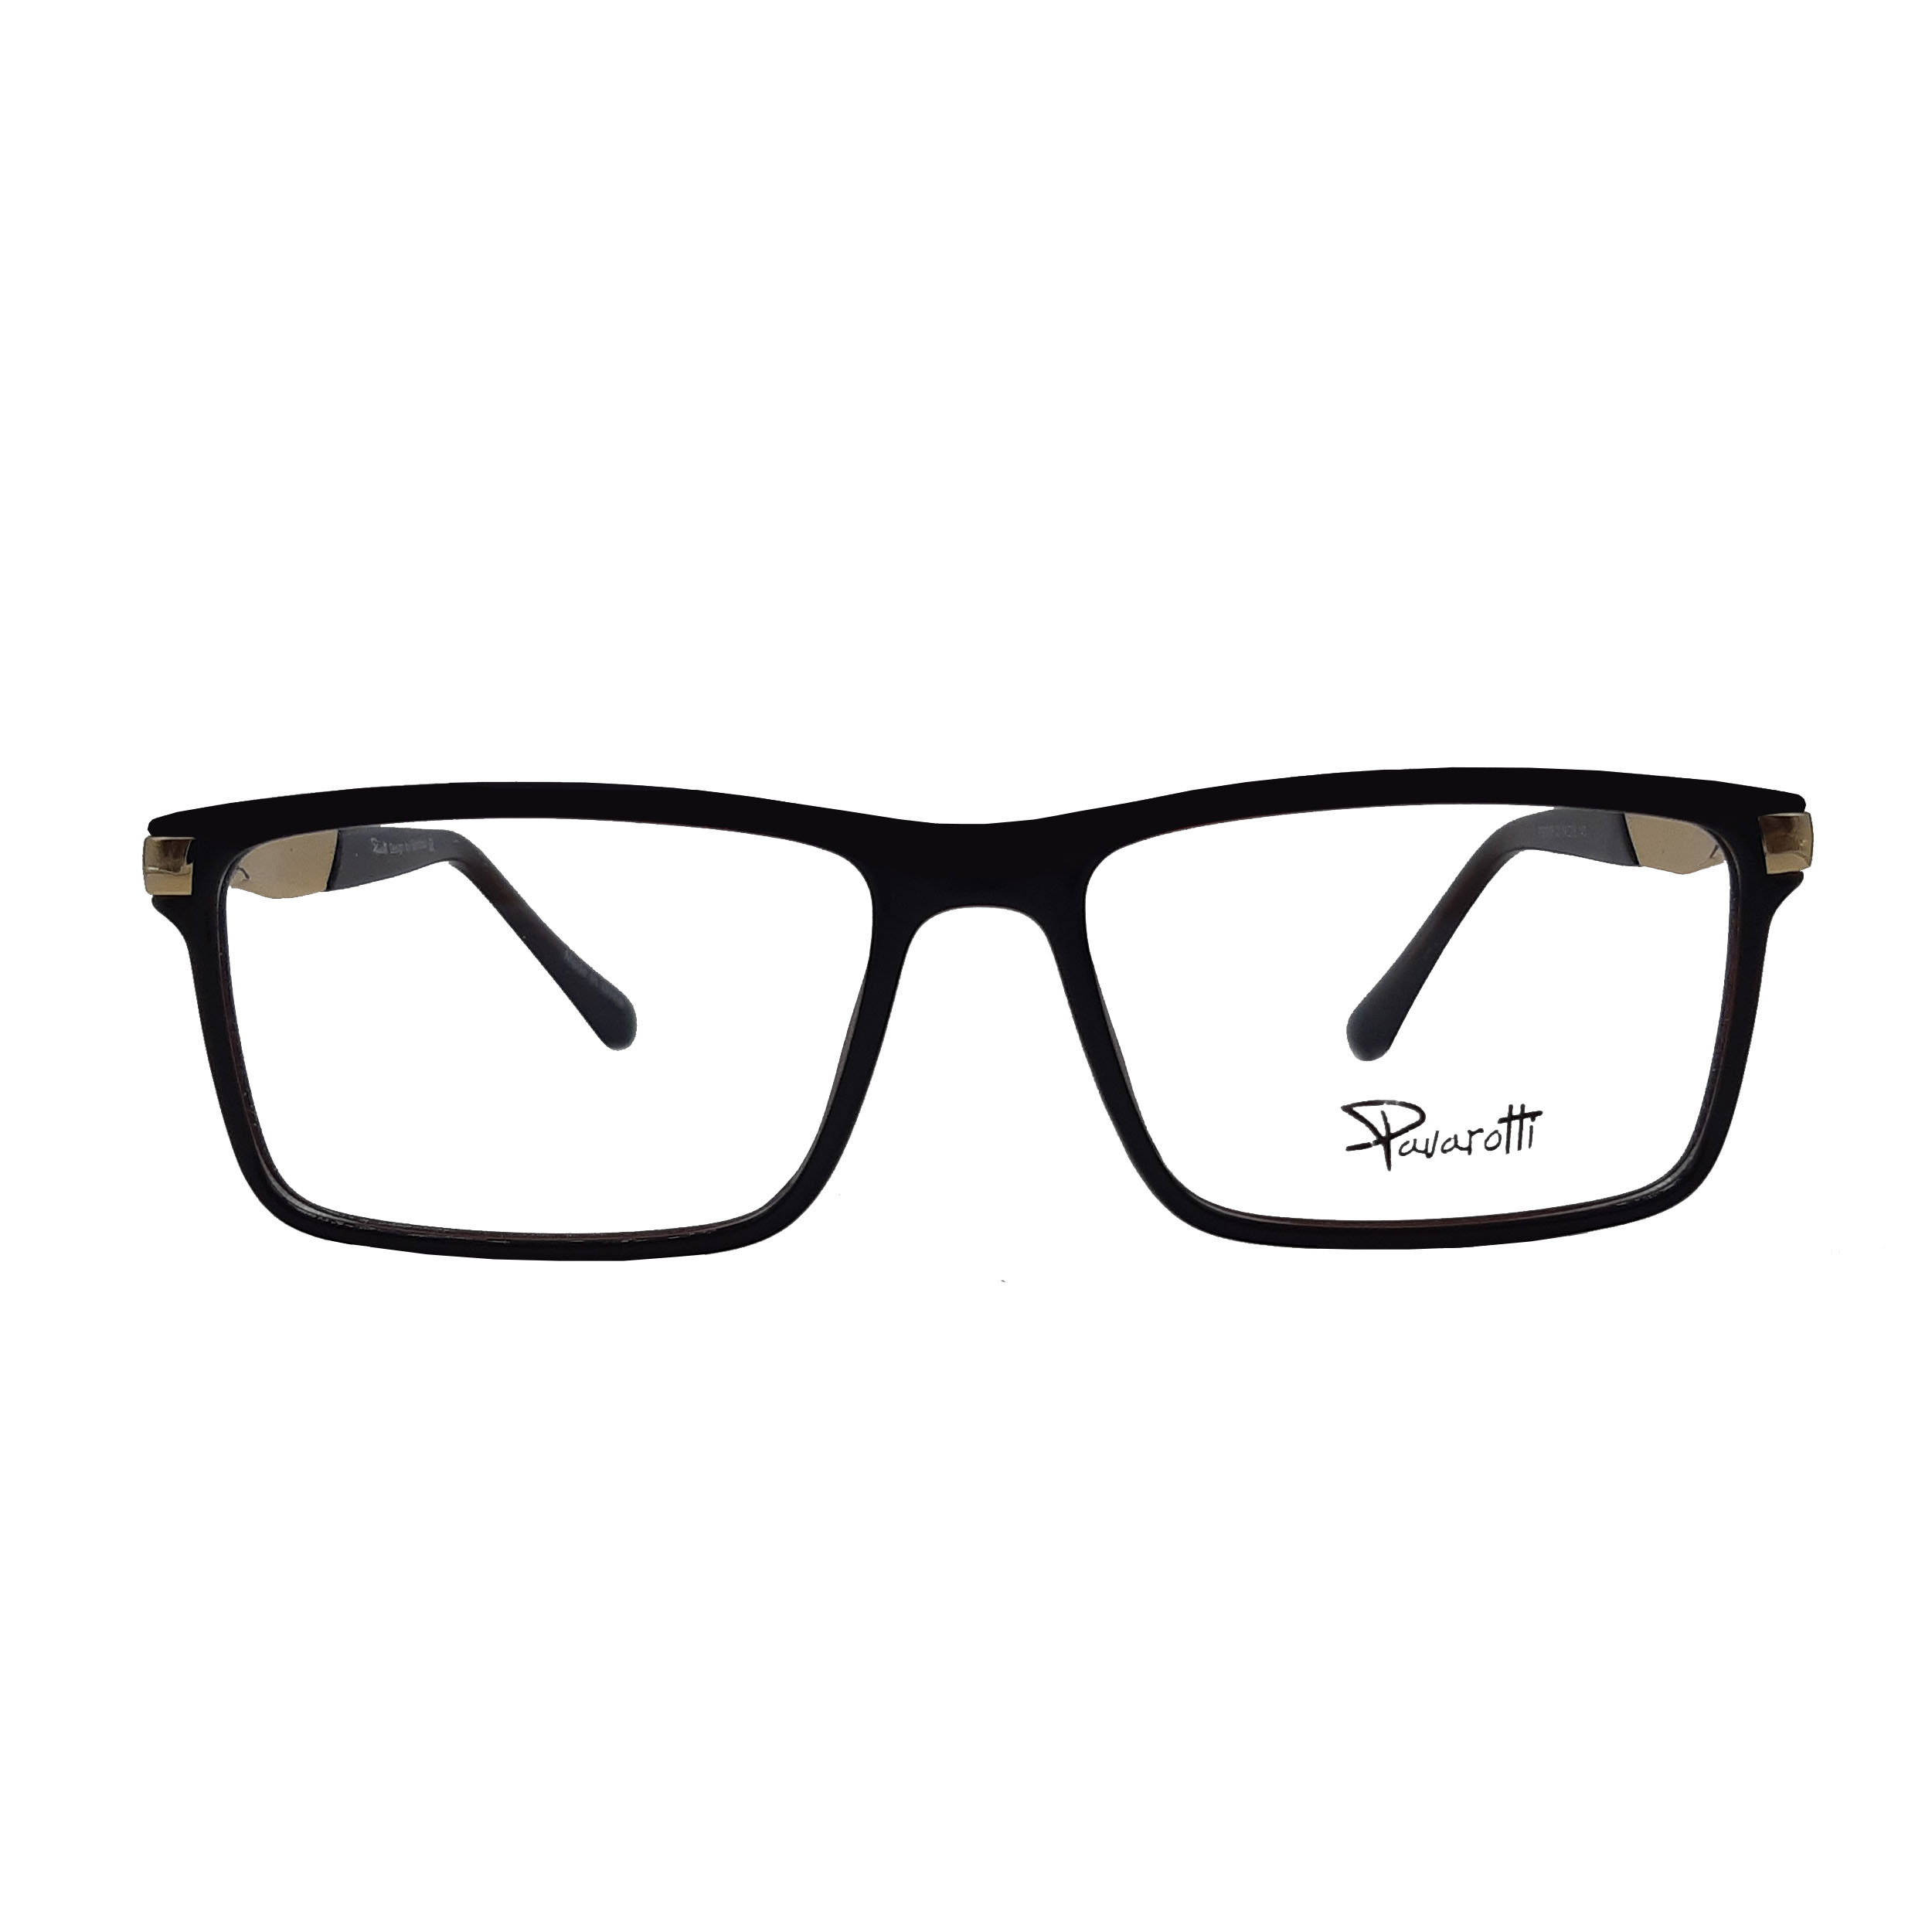 فریم عینک طبی مردانه پاواروتی مدل rb8916